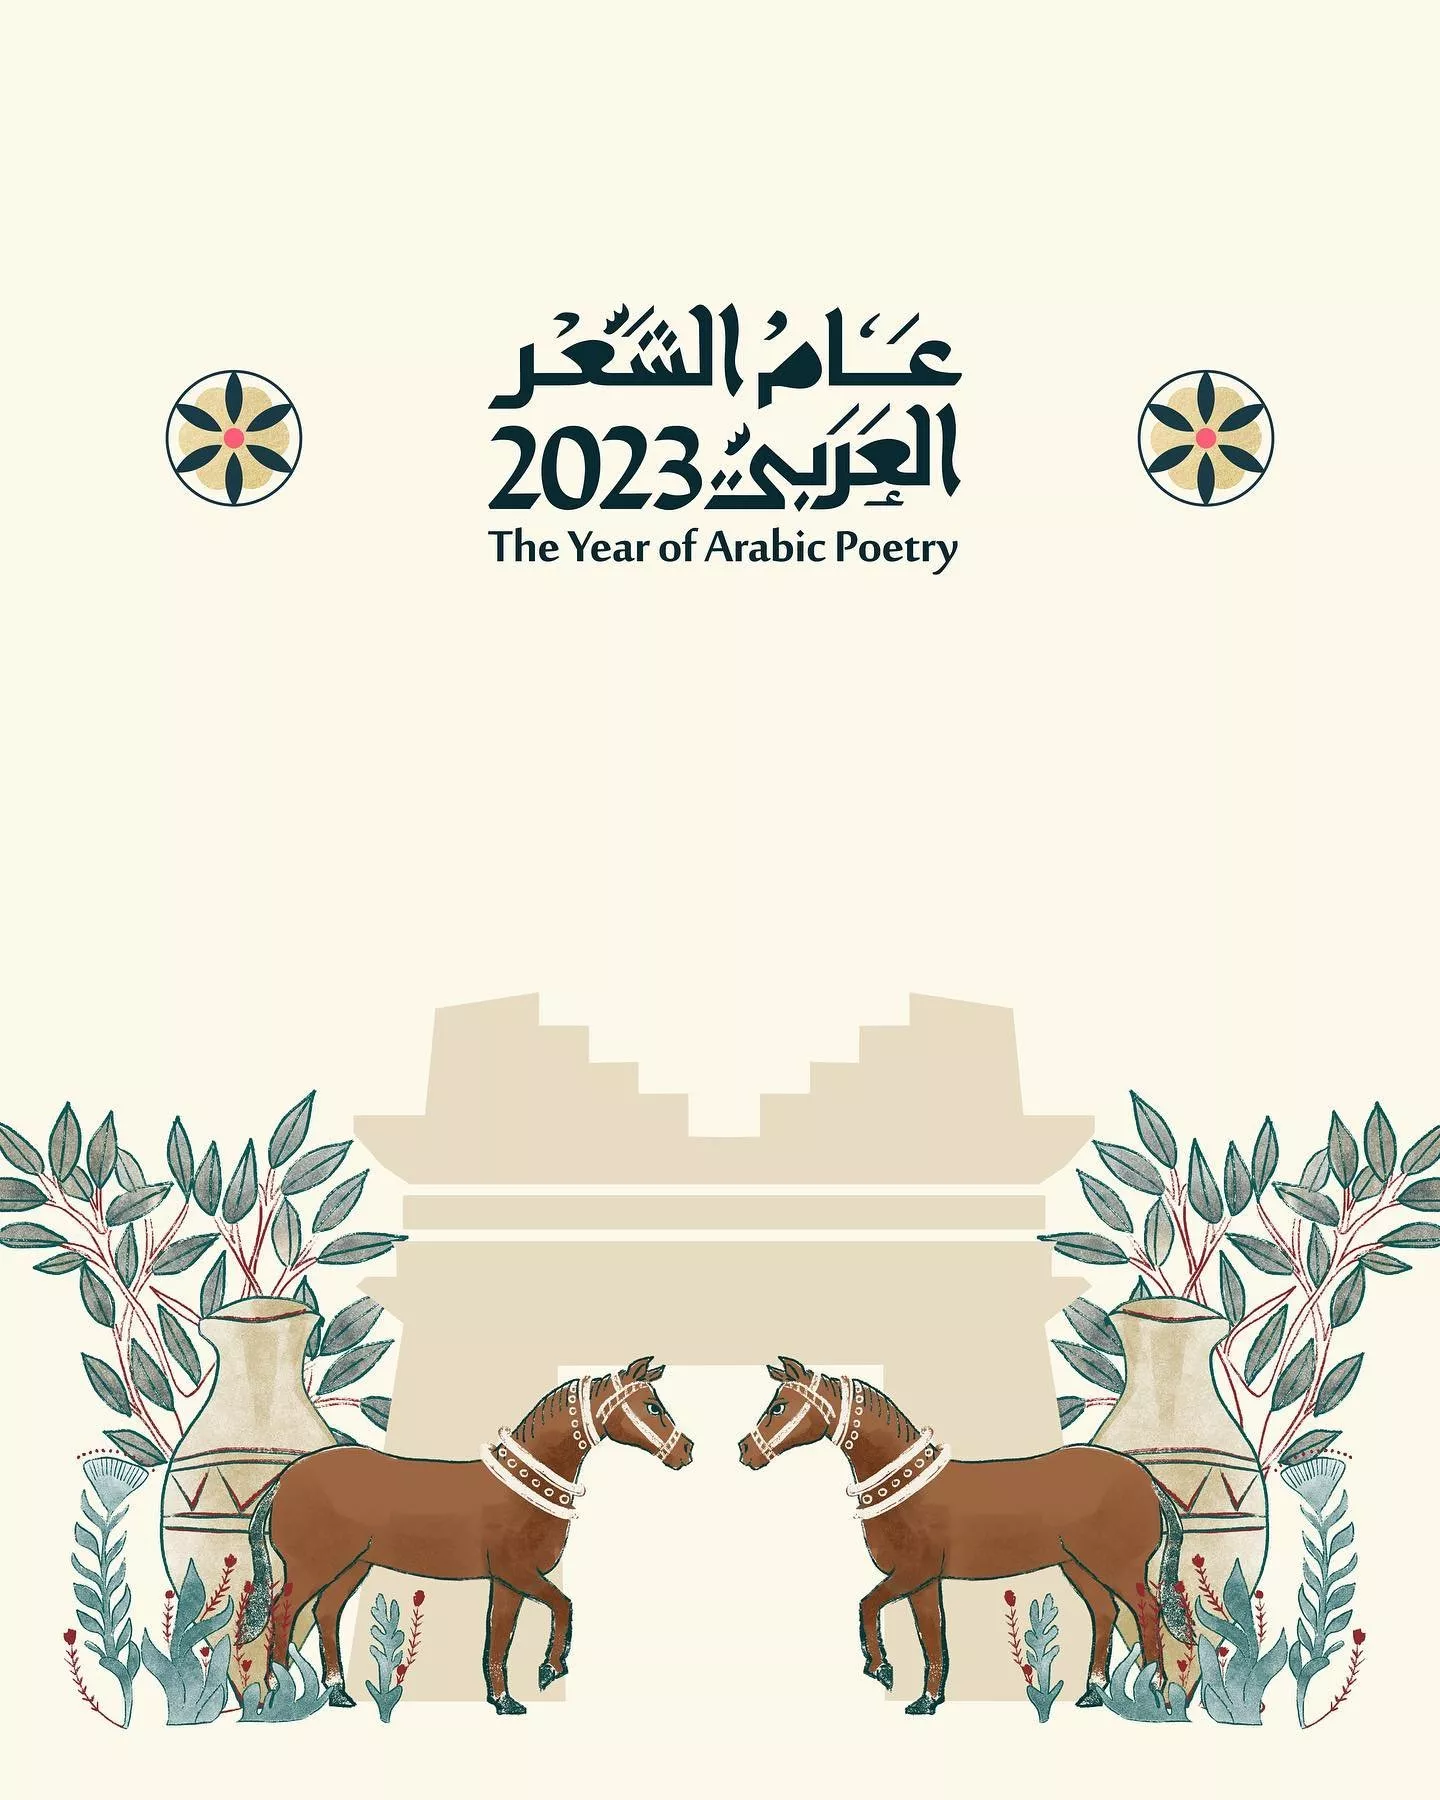 تسمية 2023 عام الشعر العربي في السعودية، بموافقة وزارة الثقافة